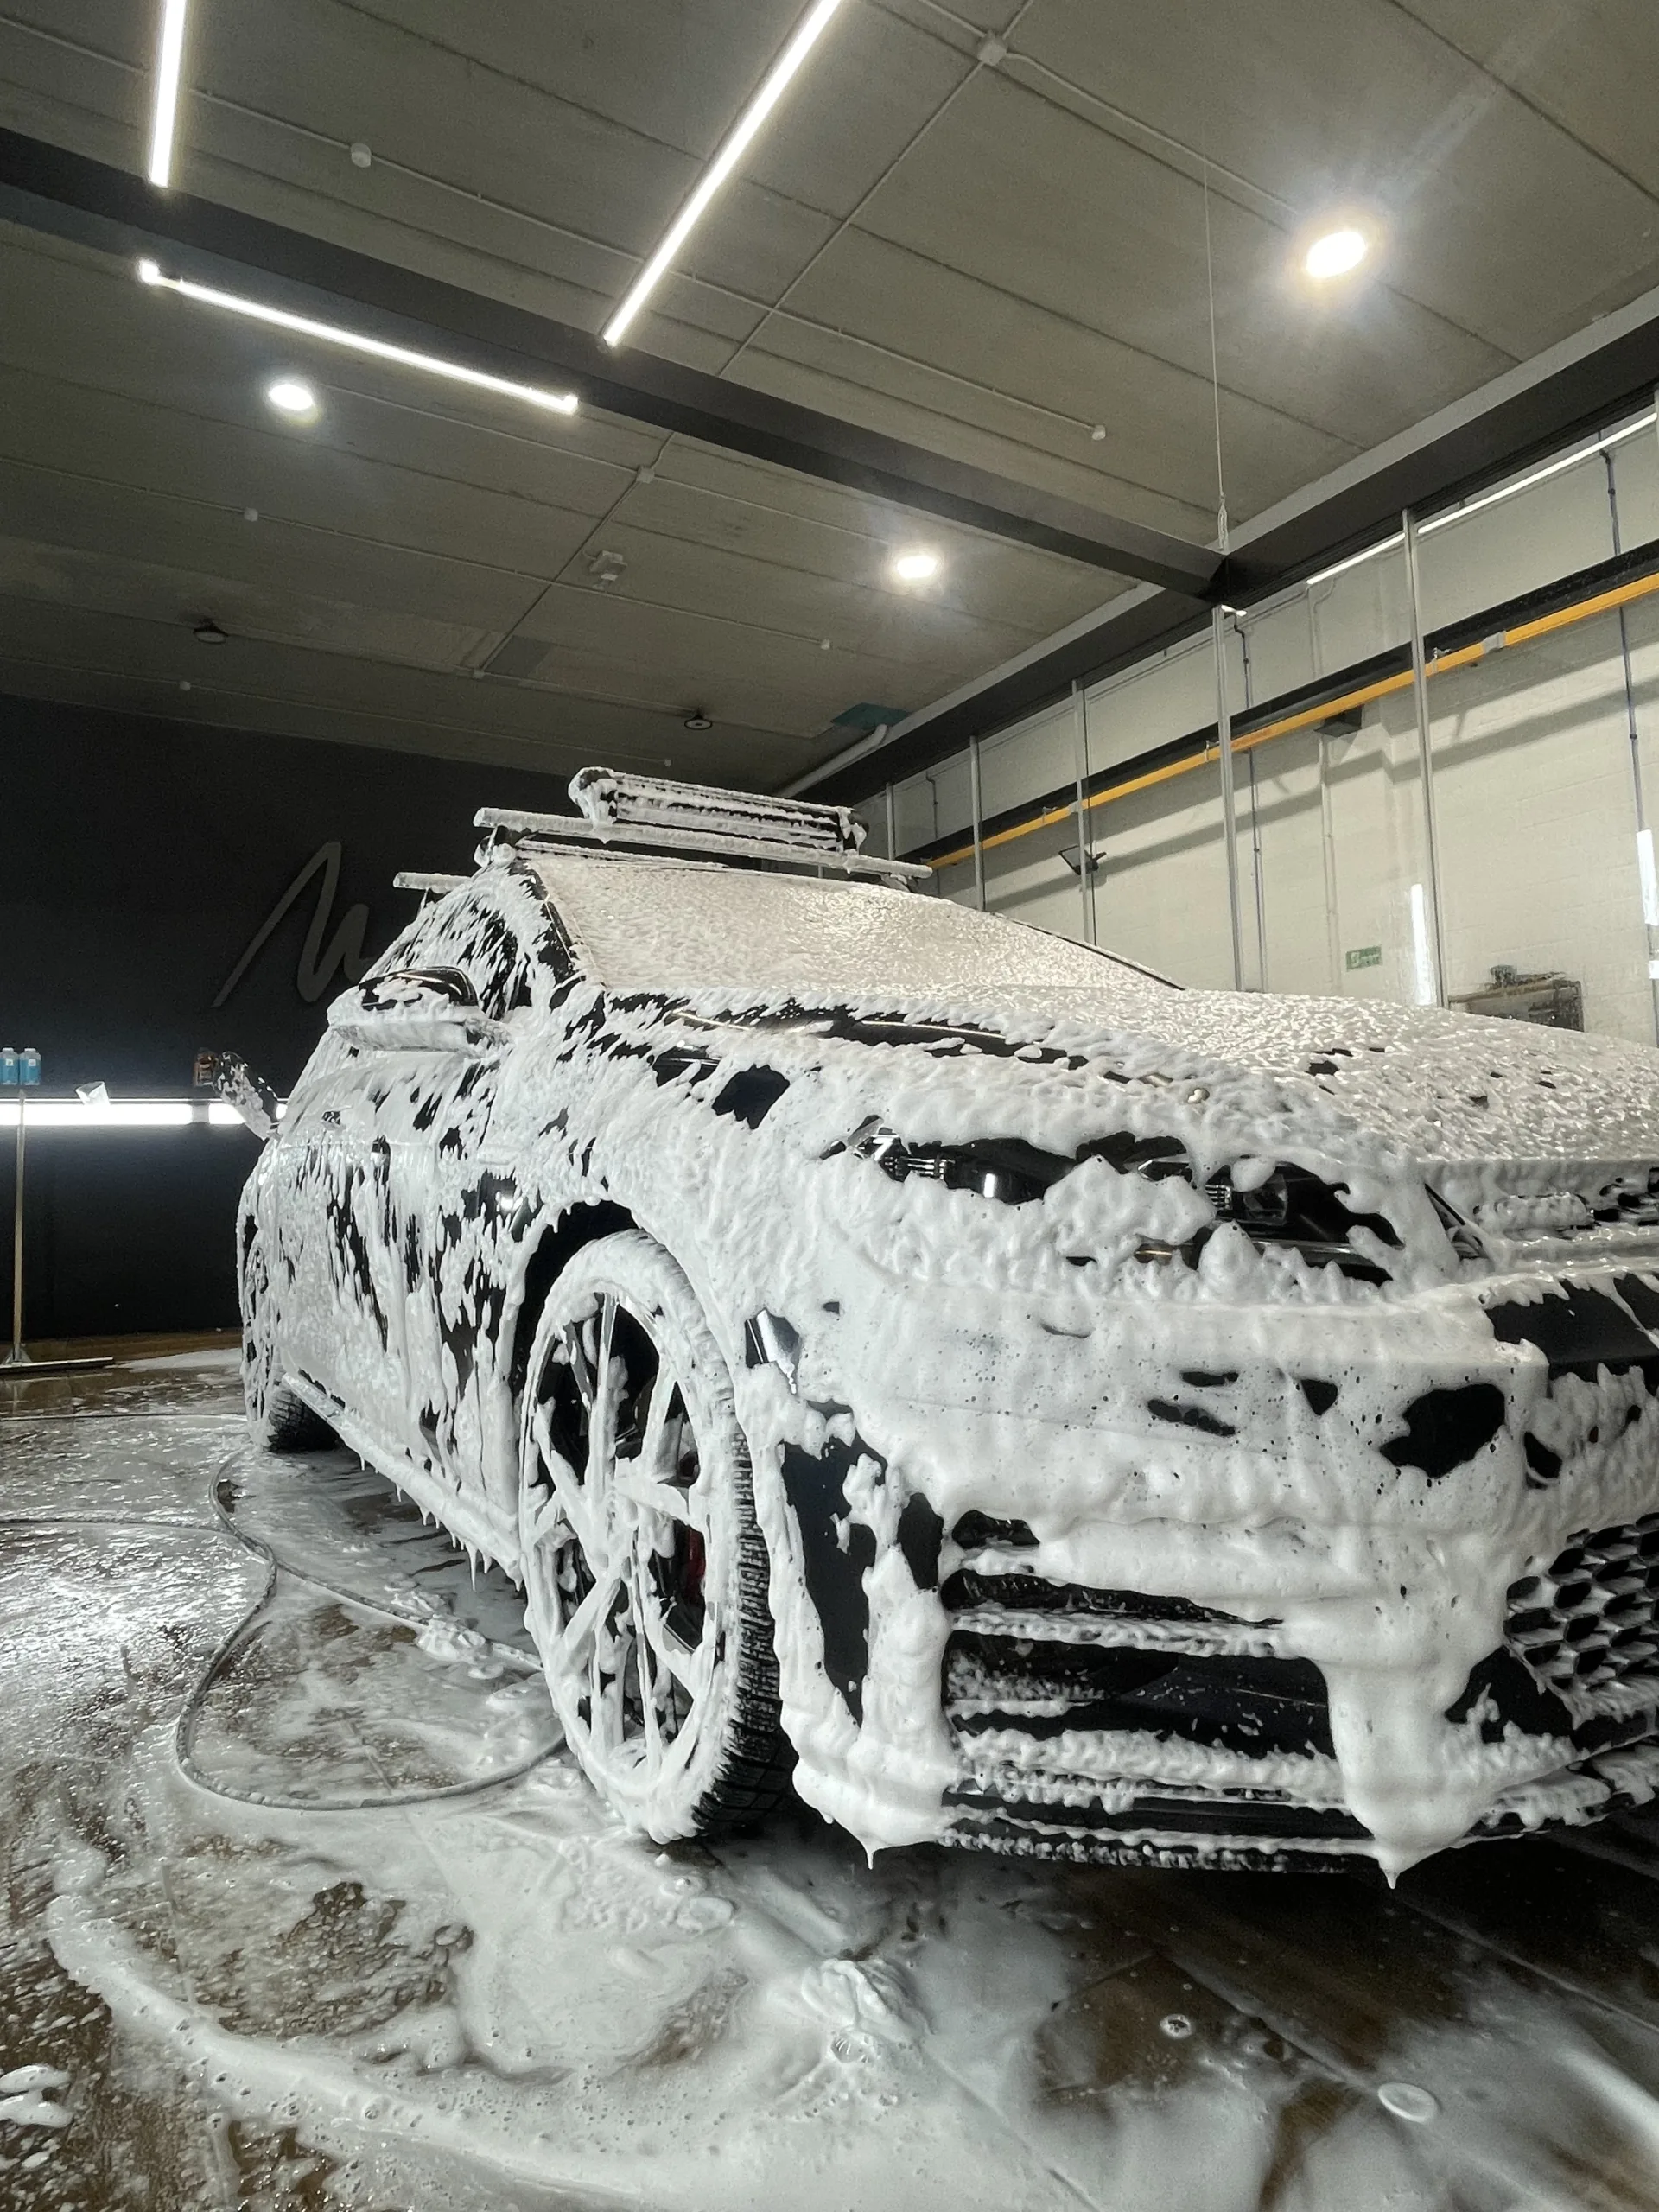 Lavado coche [Audi a3 y Volkswagen golf] con FOAM espuma activa